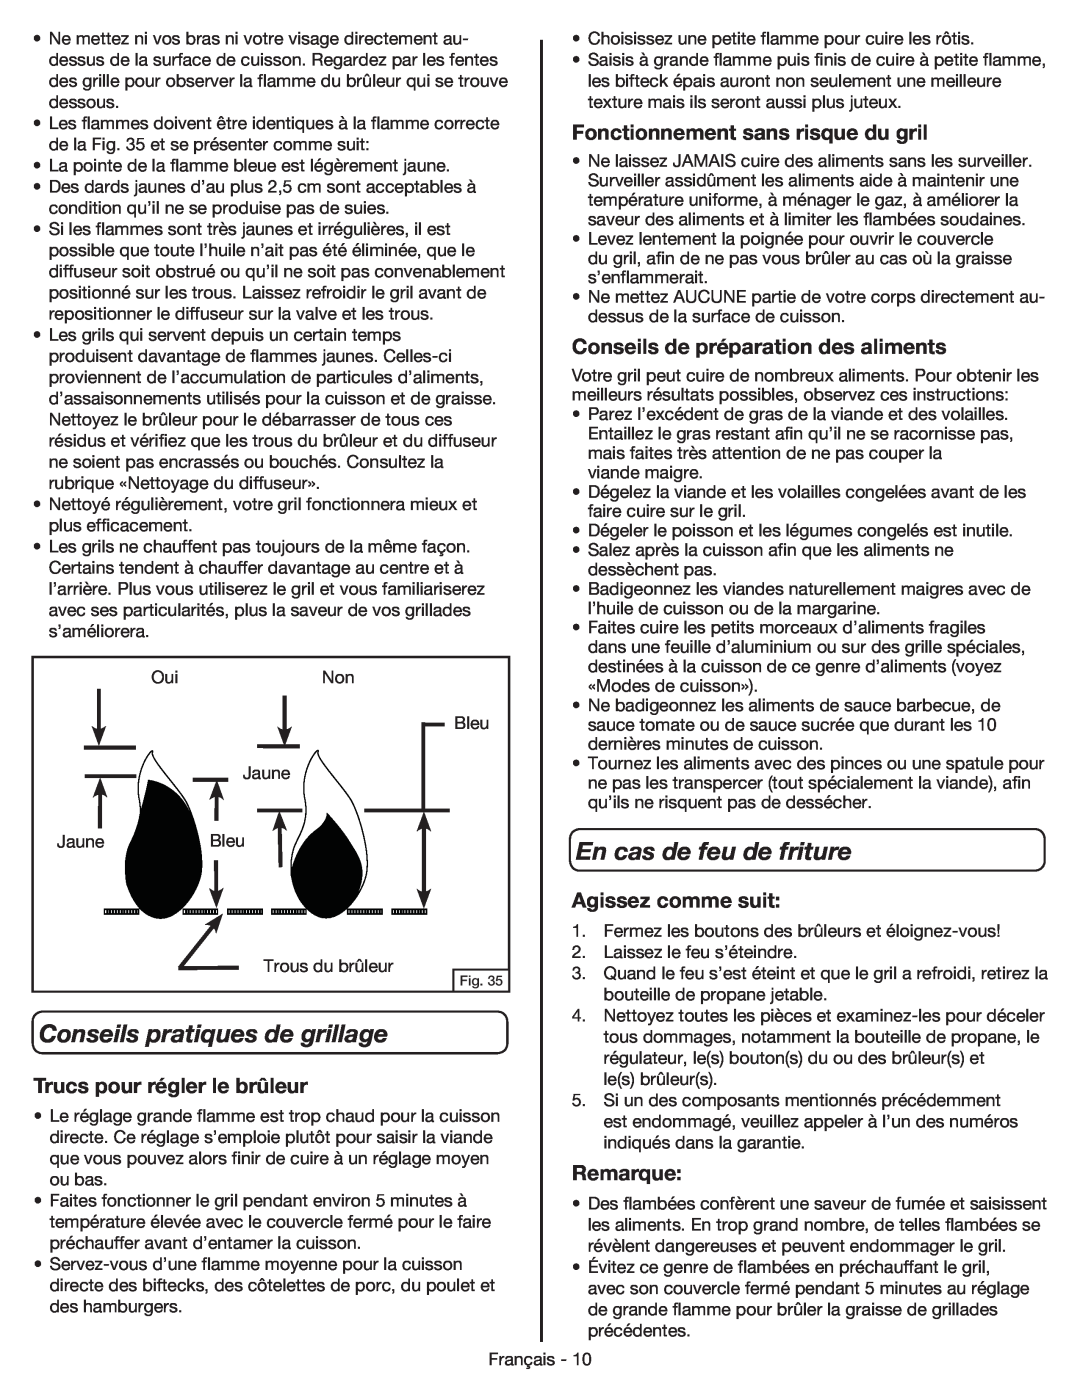 Coleman 9959 manual En cas de feu de friture, Conseils pratiques de grillage, Fonctionnement sans risque du gril, Remarque 